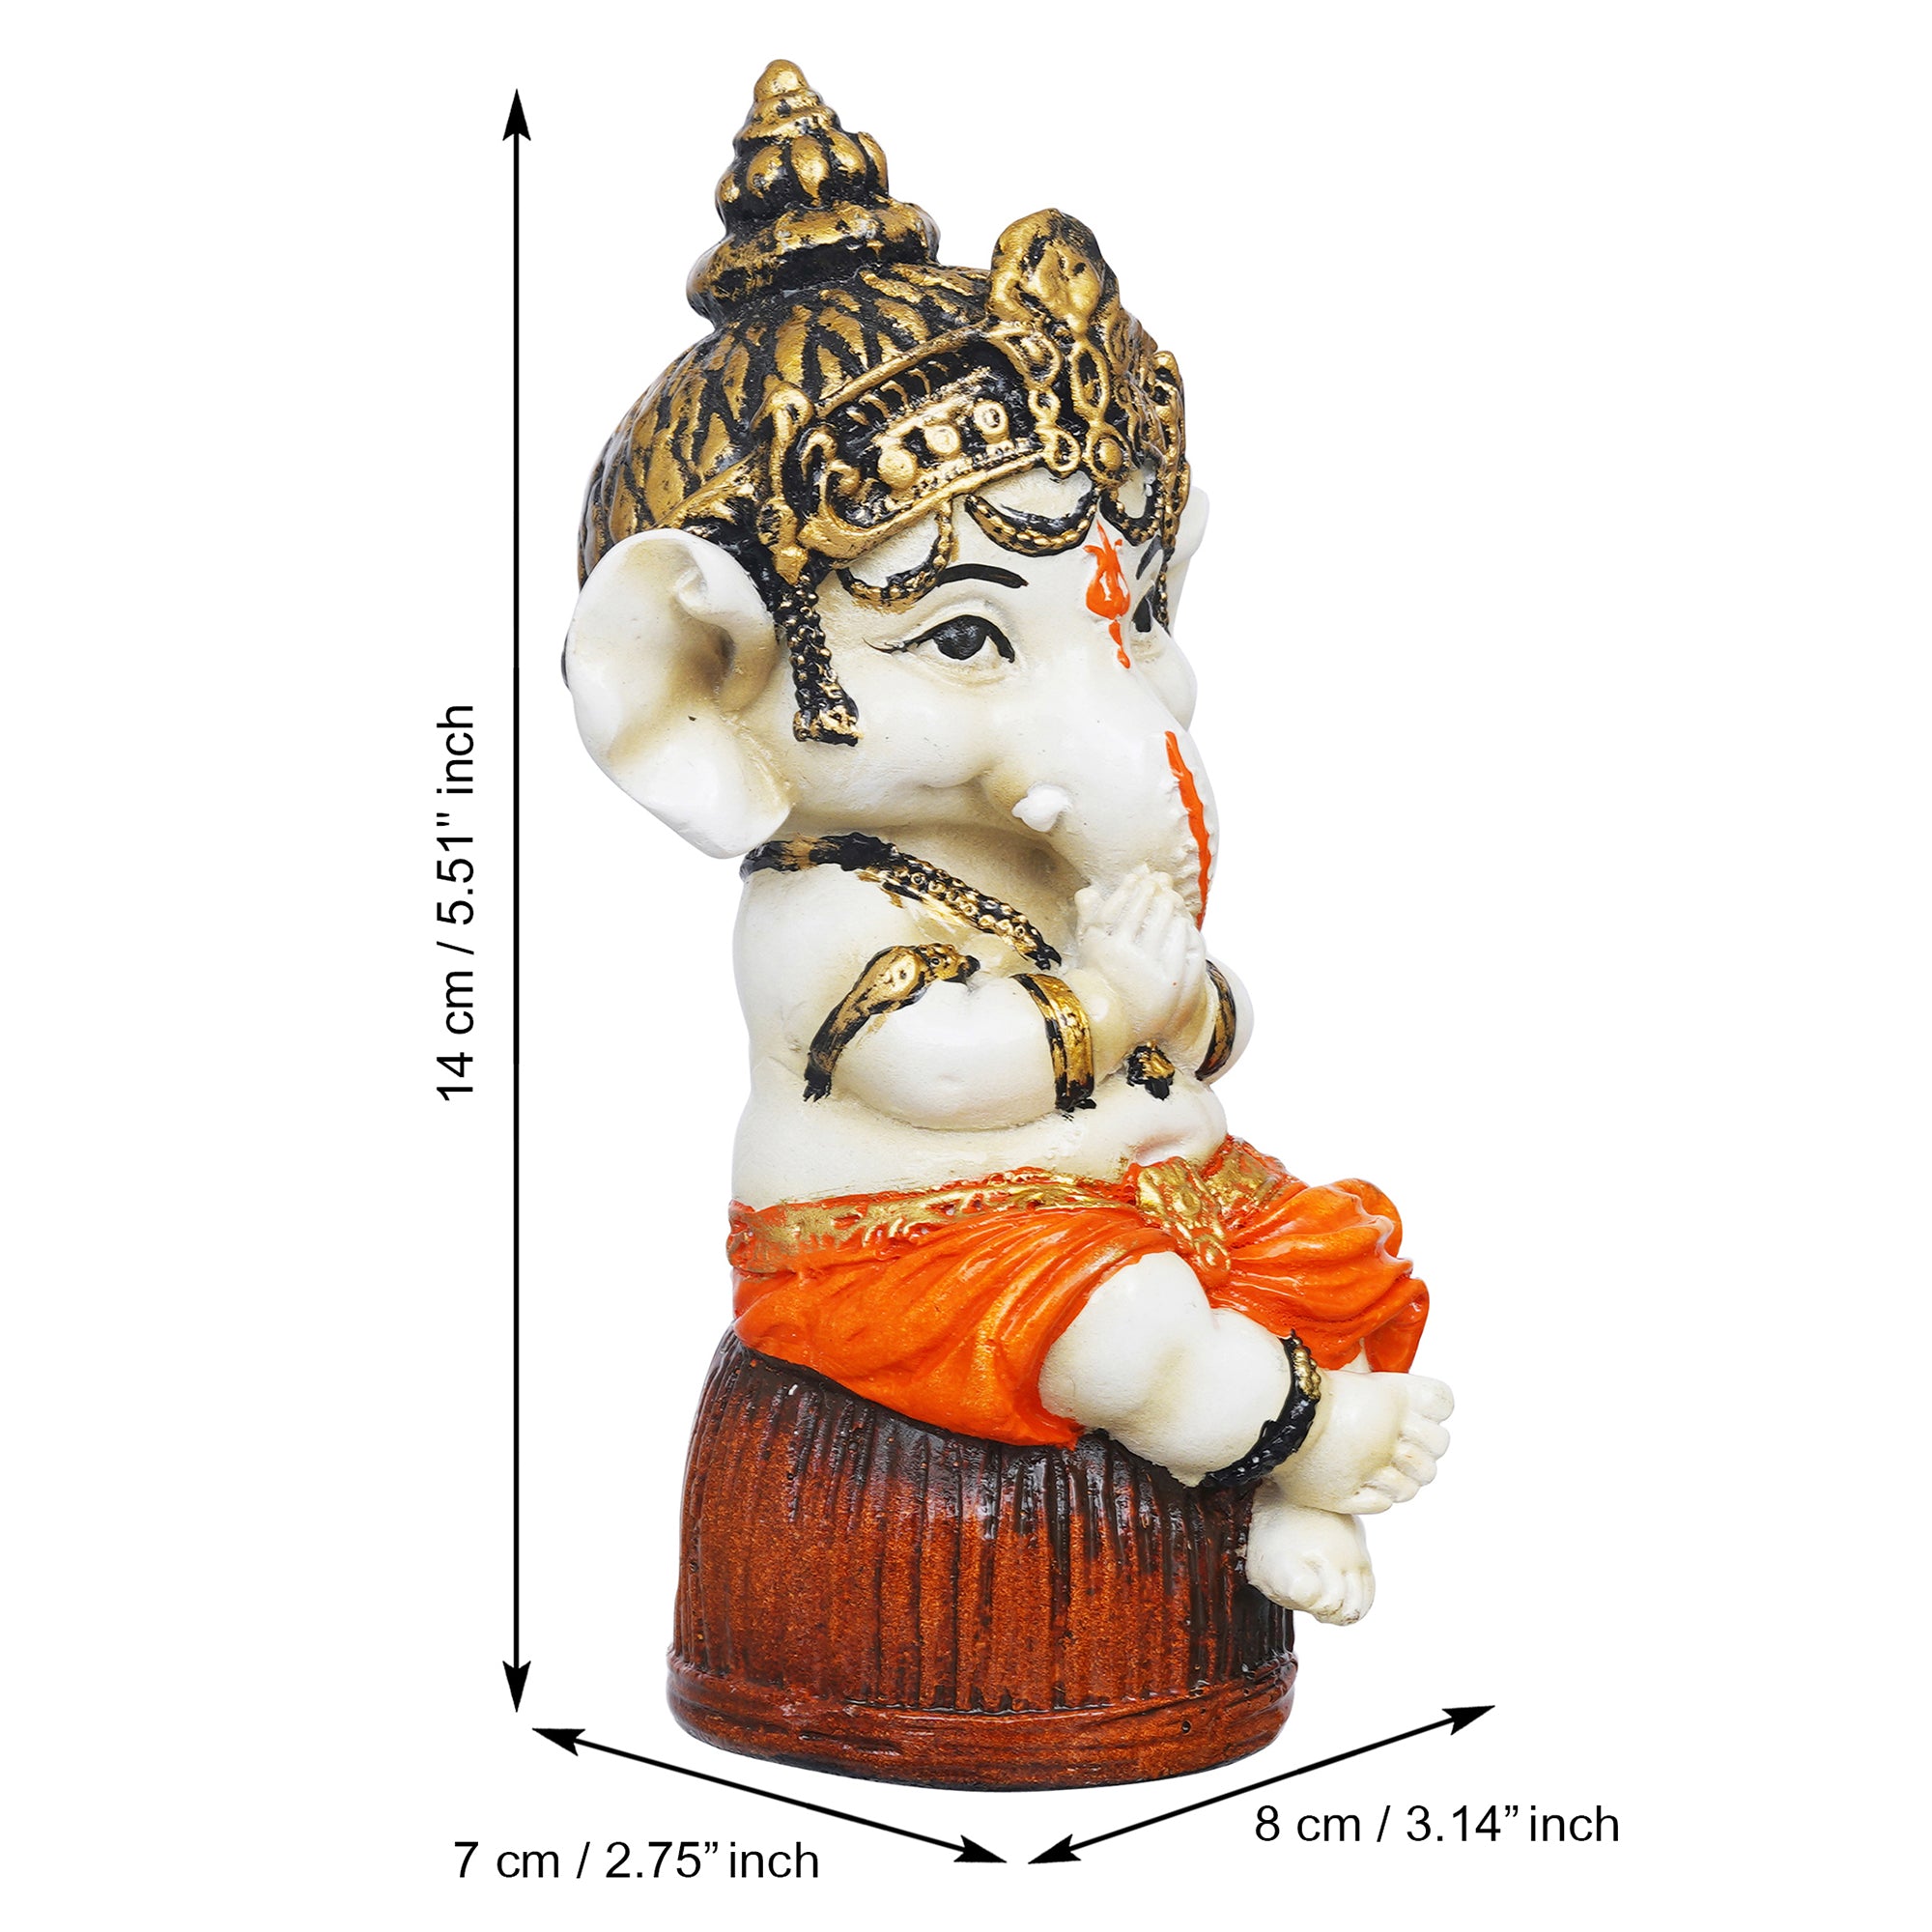 eCraftIndia Orange Polyresin Handcrafted Lord Ganesha Idol Sitting on Rock 3